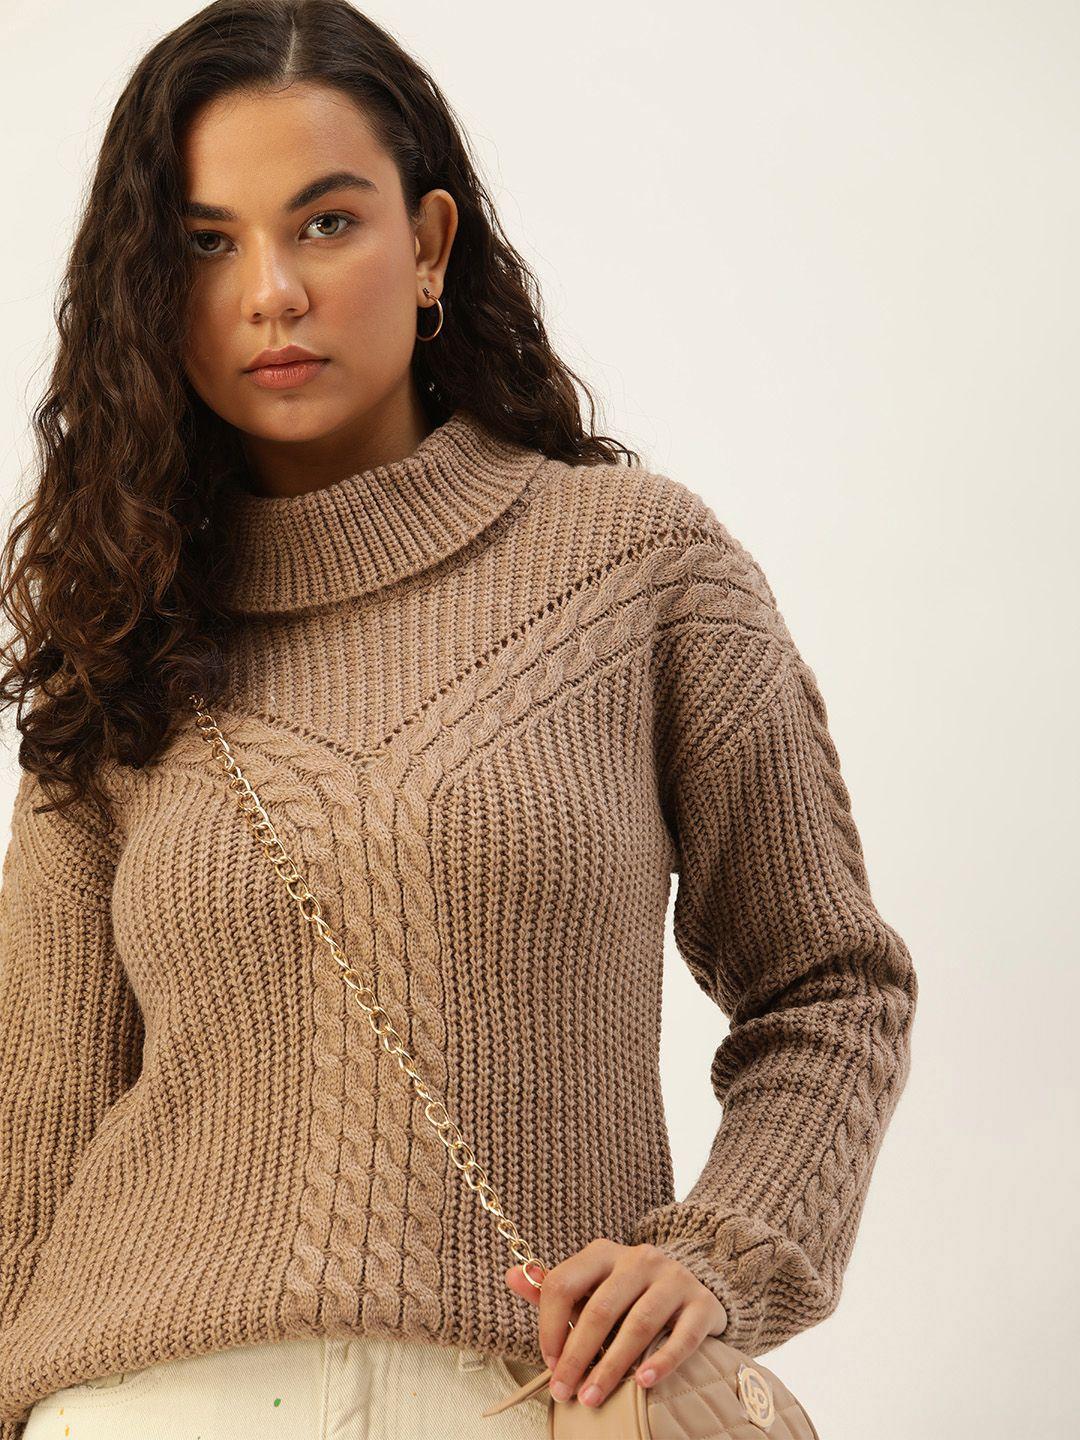 kook n keech women open knit pullover sweater